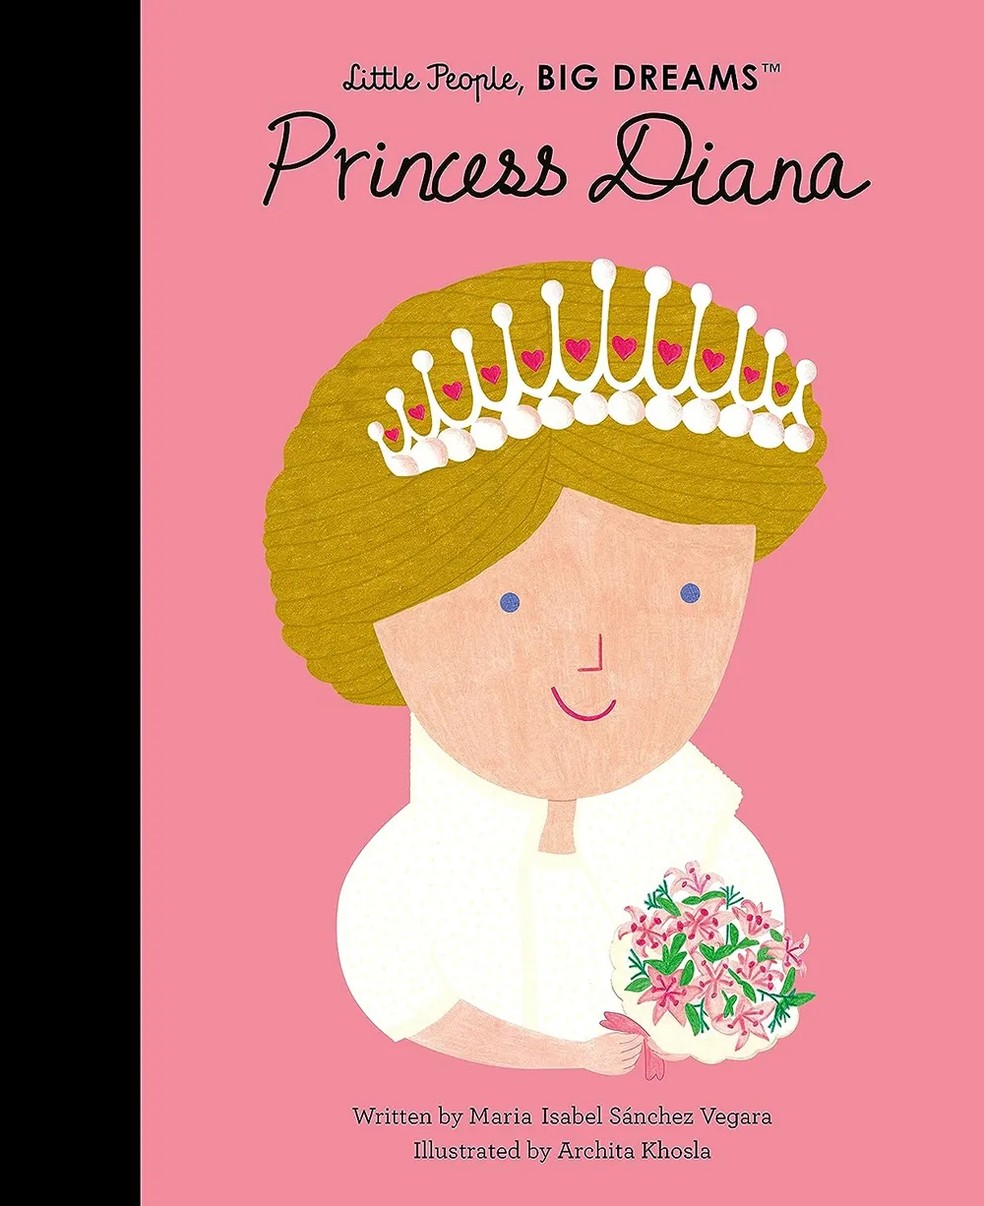 Capa do livro infantil que retrata os distúrbios alimentares da Princesa Diana — Foto: Divulgação